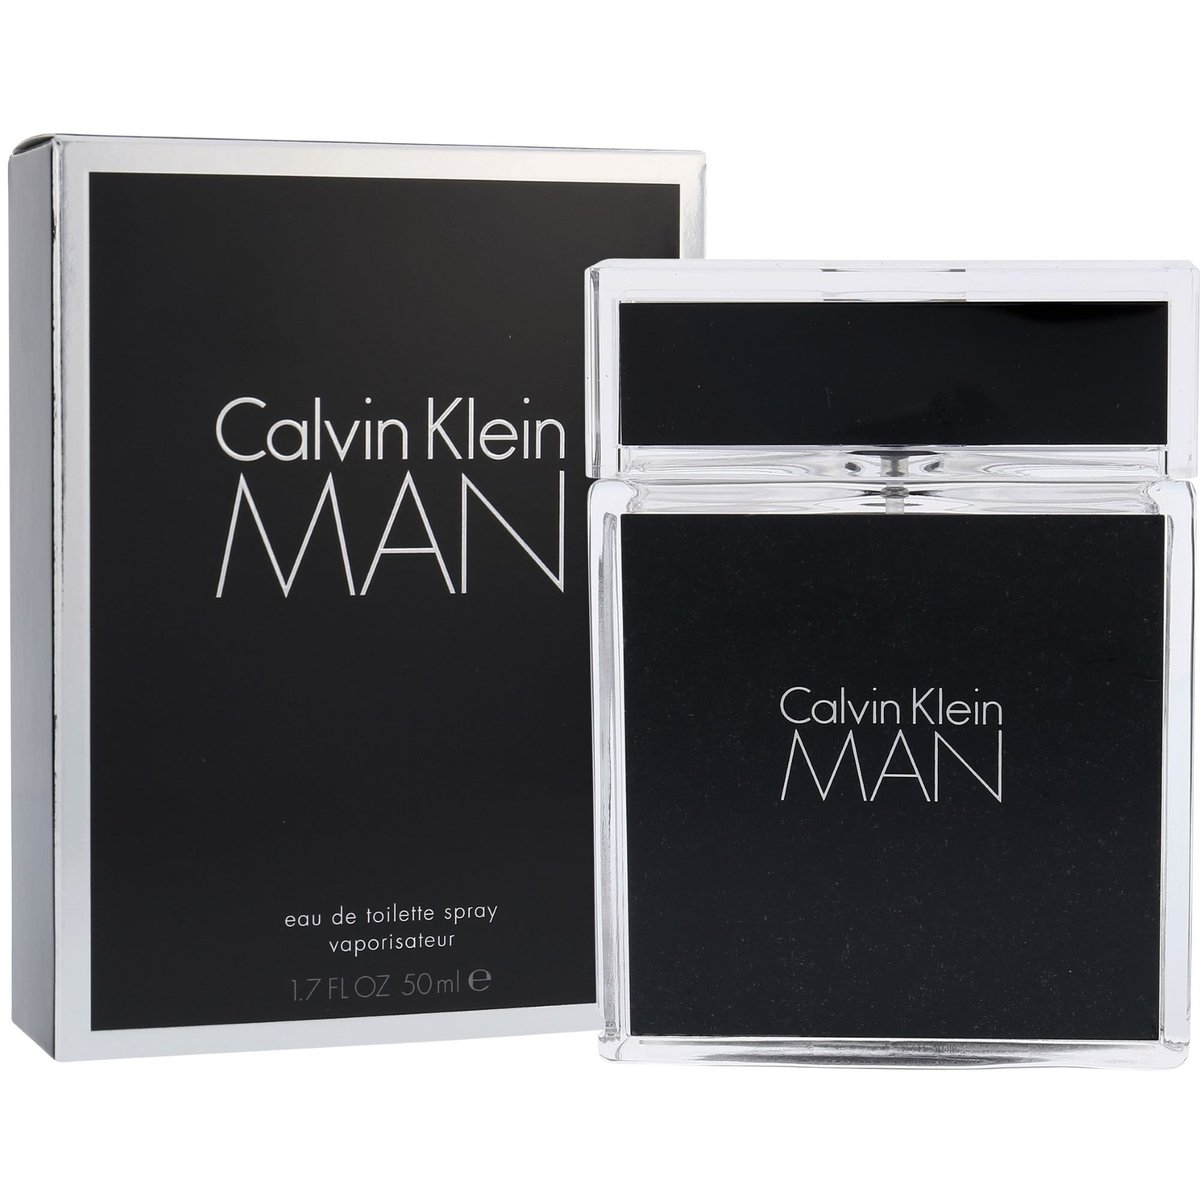 Calvin Klein Man toaletní voda